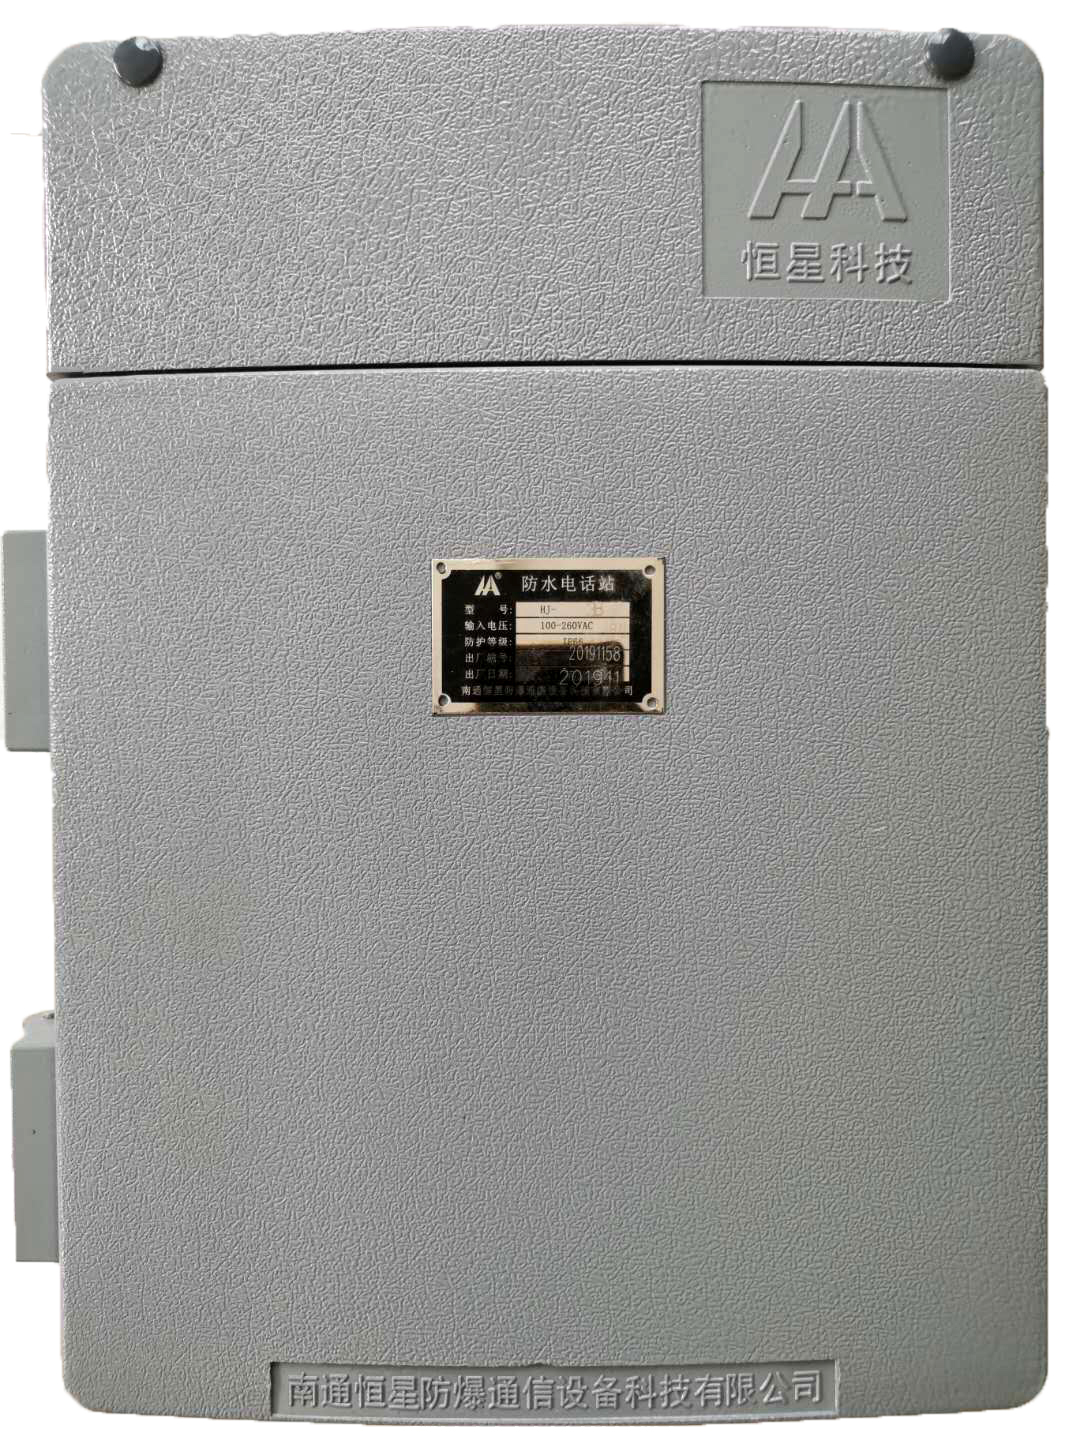 供应第二代HA-2无主机通信设备扩音对讲为本质安全型具有普通电话机功能外图片